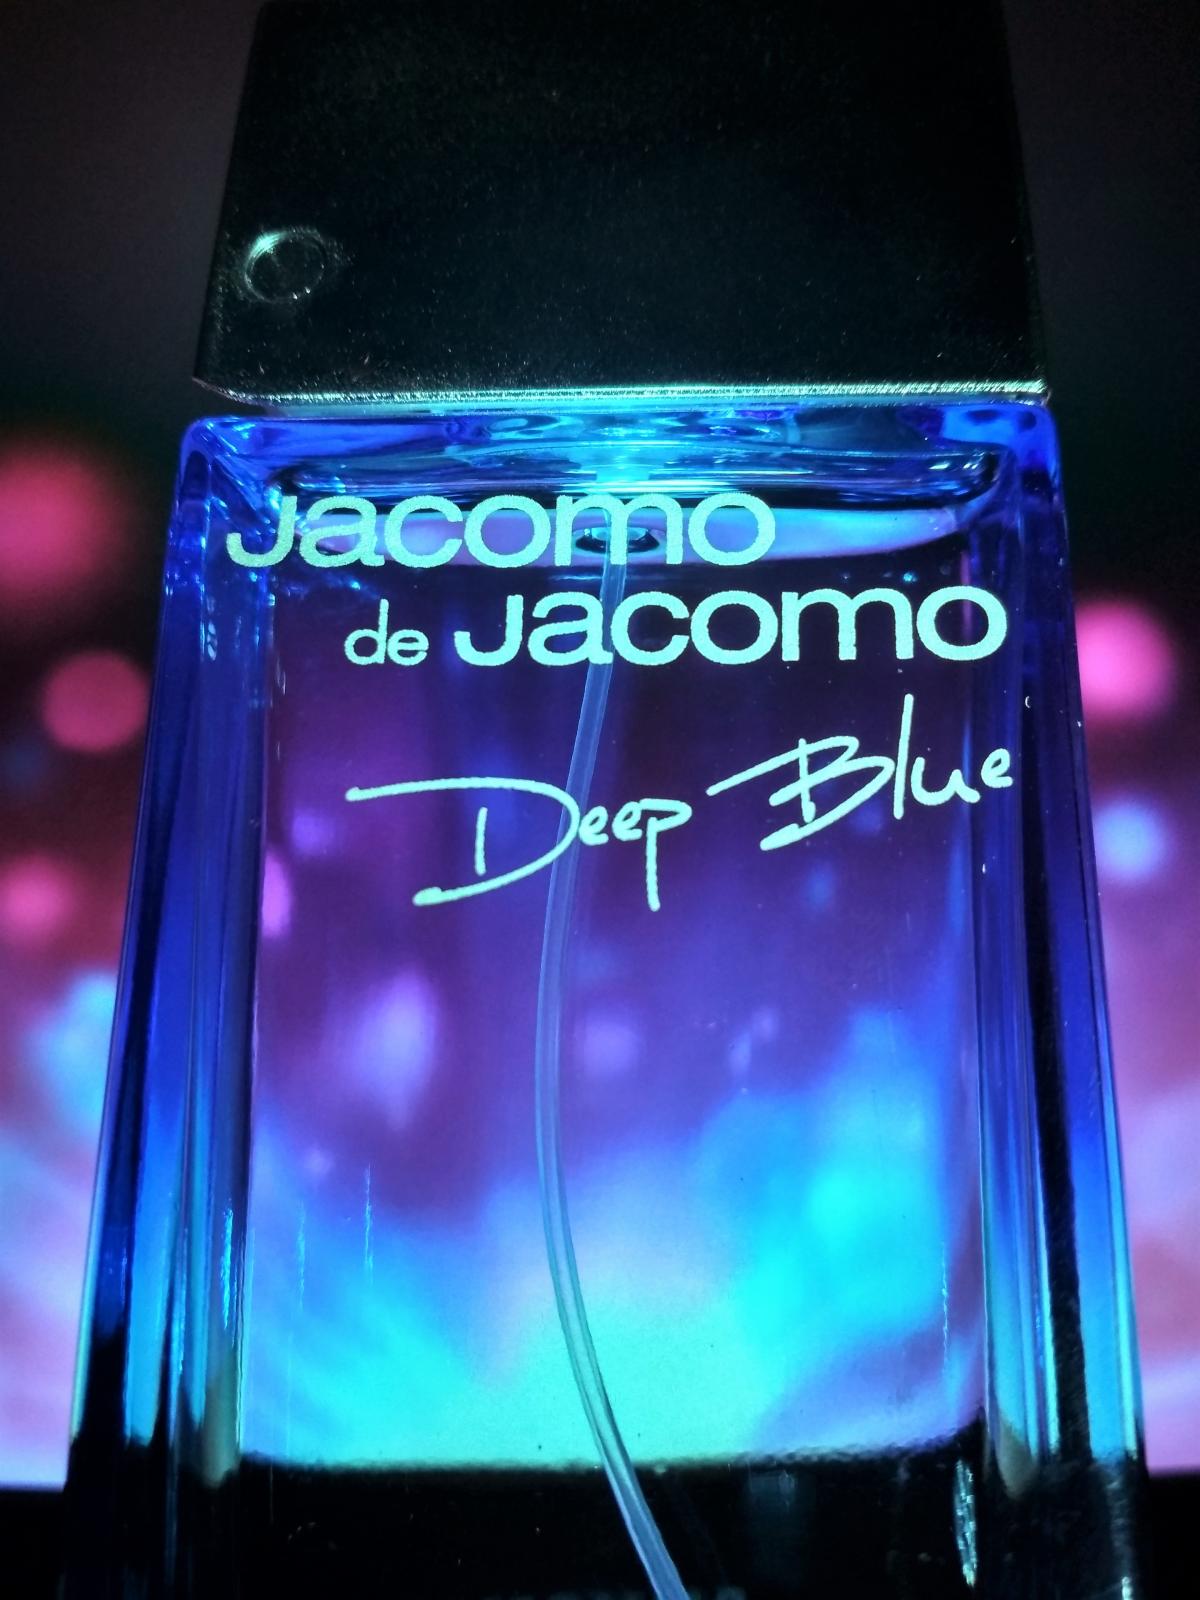 aura fragrance by jacoma